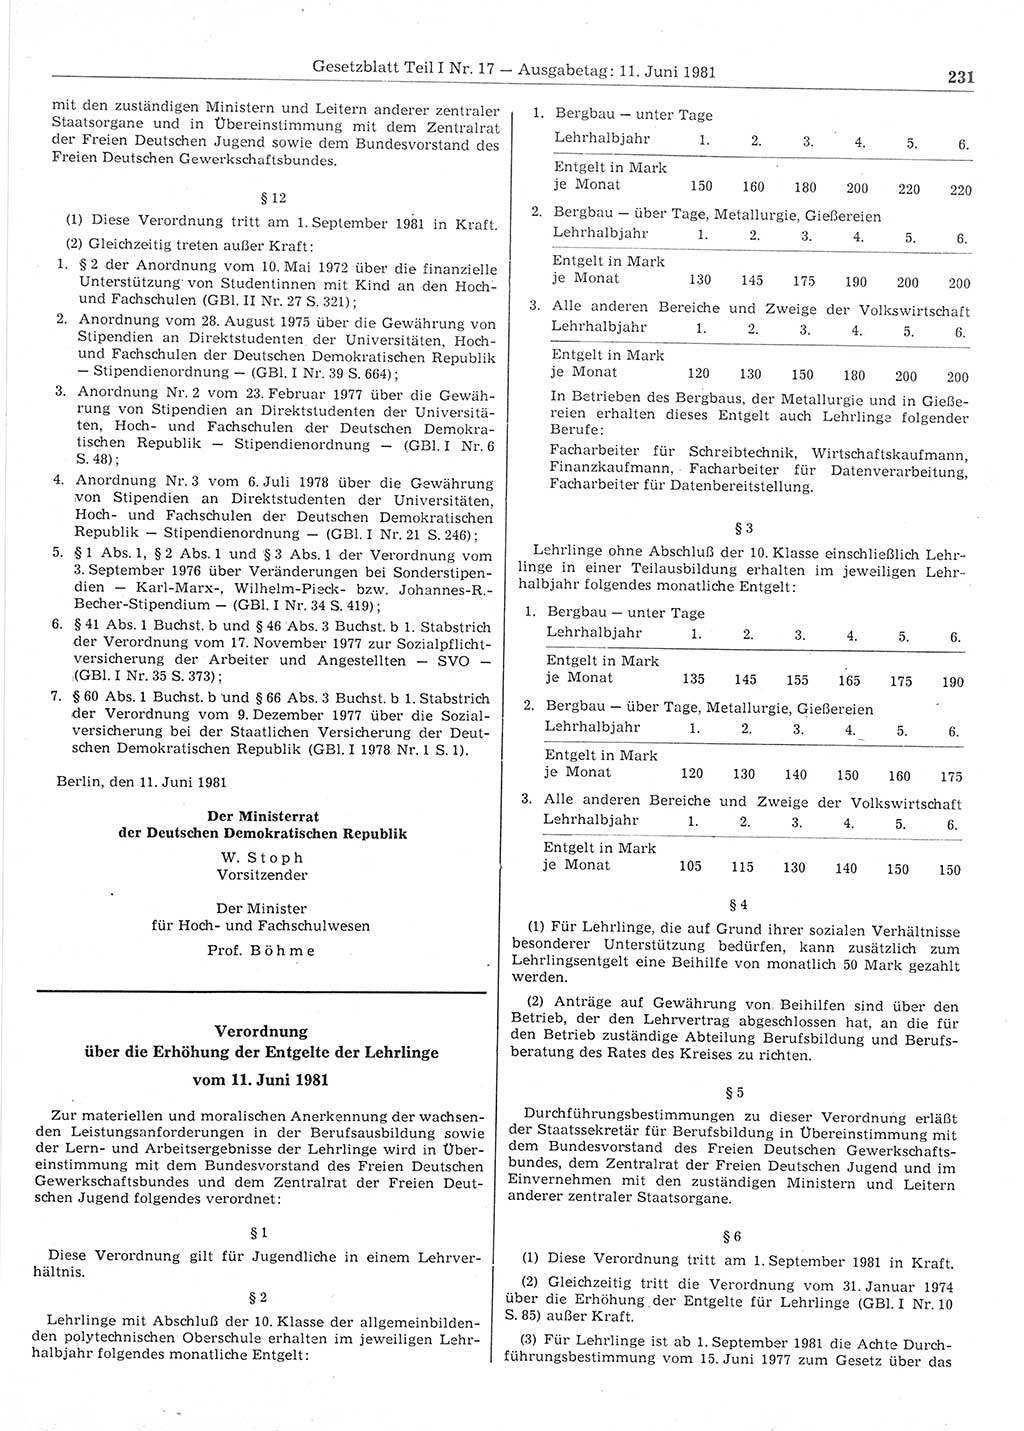 Gesetzblatt (GBl.) der Deutschen Demokratischen Republik (DDR) Teil Ⅰ 1981, Seite 231 (GBl. DDR Ⅰ 1981, S. 231)